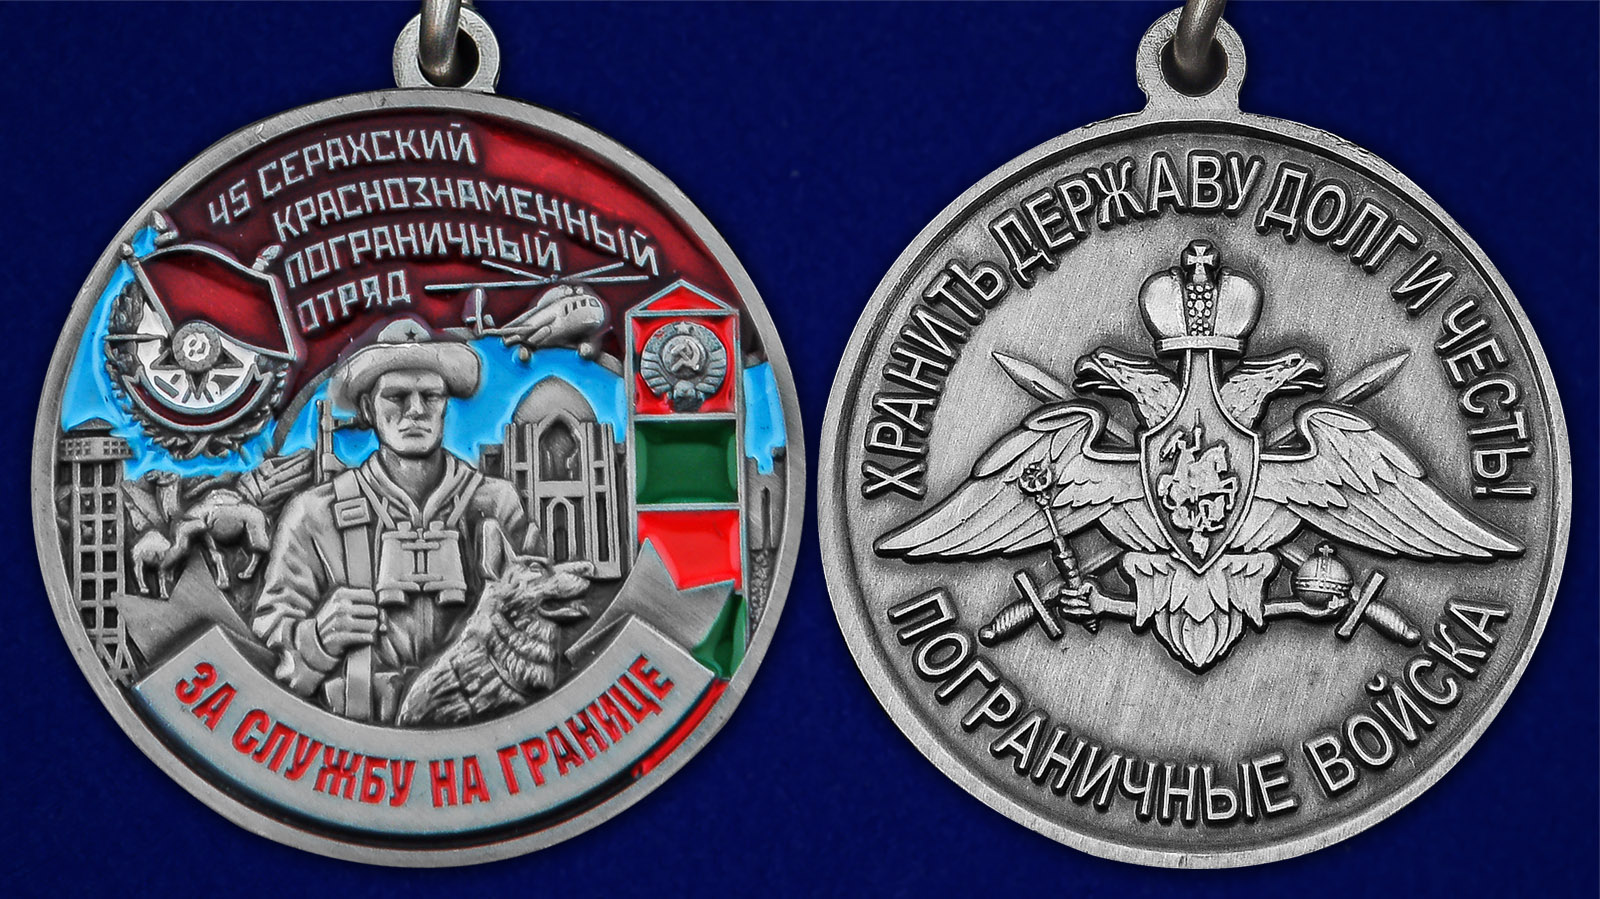 Описание медали "За службу в Серахском пограничном отряде"